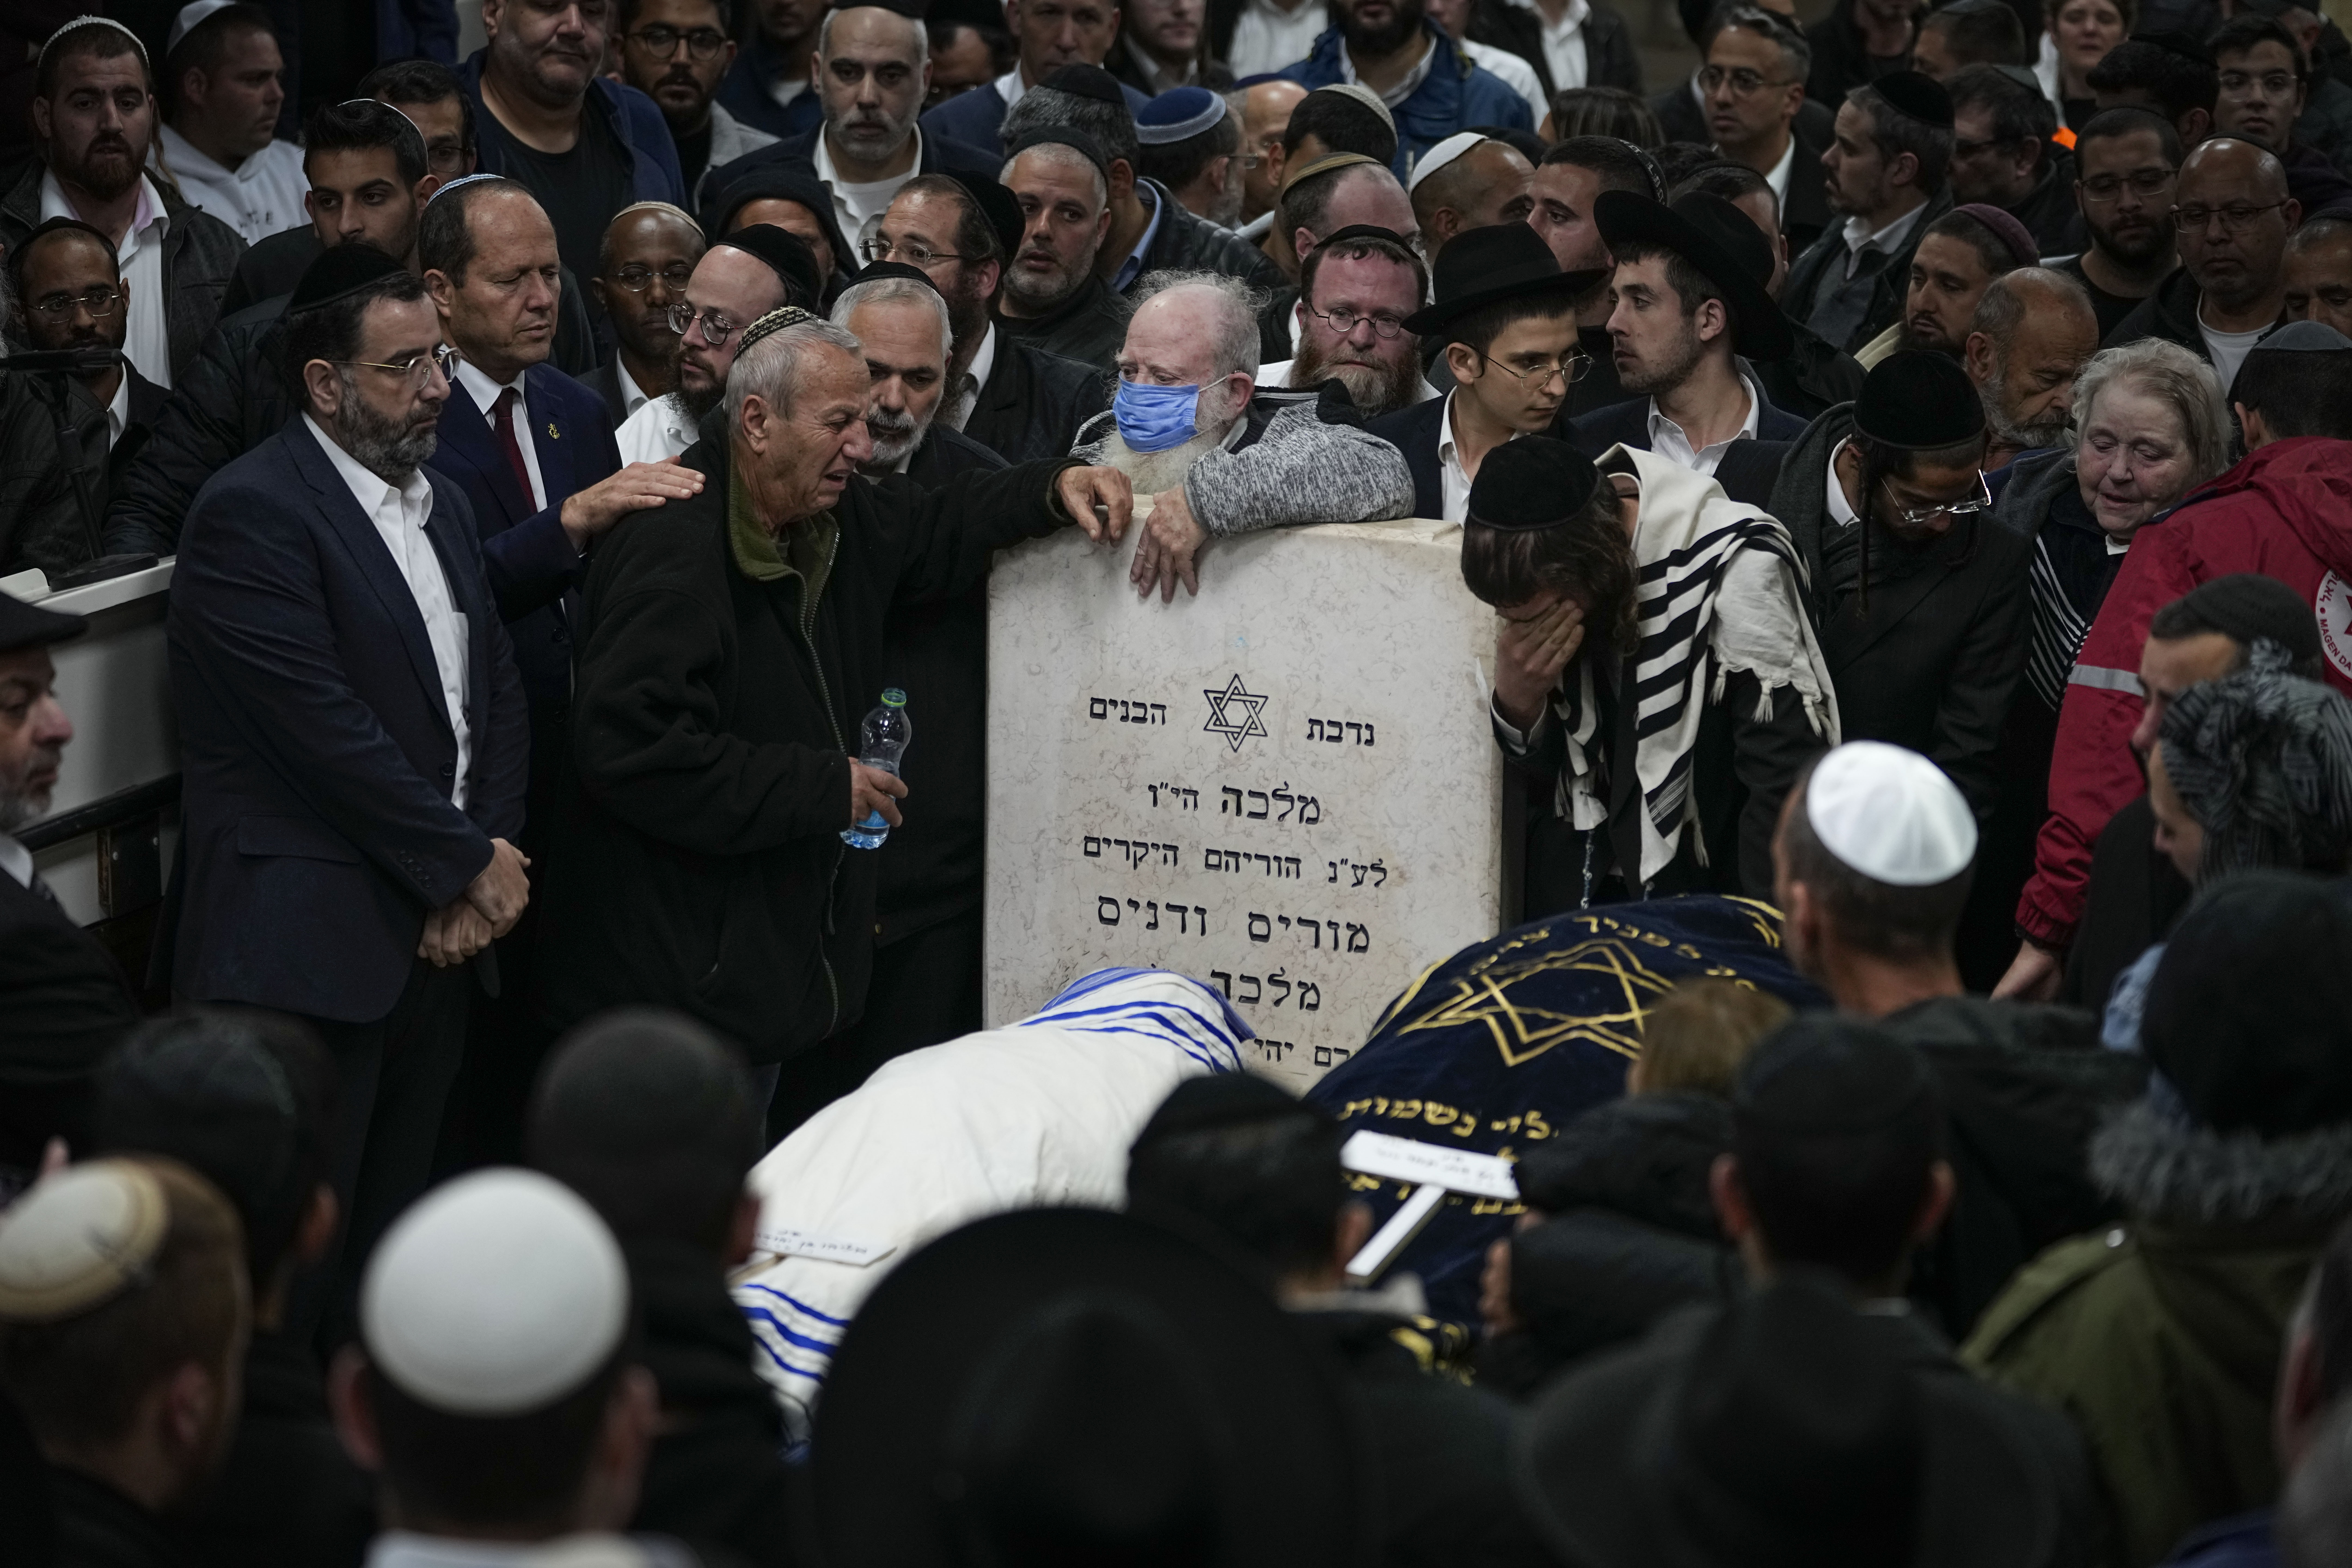 Dolientes en el funeral de los israleíes Eli Mizrahi y su esposa, Natalie, víctimas de un ataque el último viernes en Jerusalén, en el cementerio de Beit Shemesh, Israel, la mañana del domingo 29 de enero de 2023. (AP Foto/Ariel Schalit)